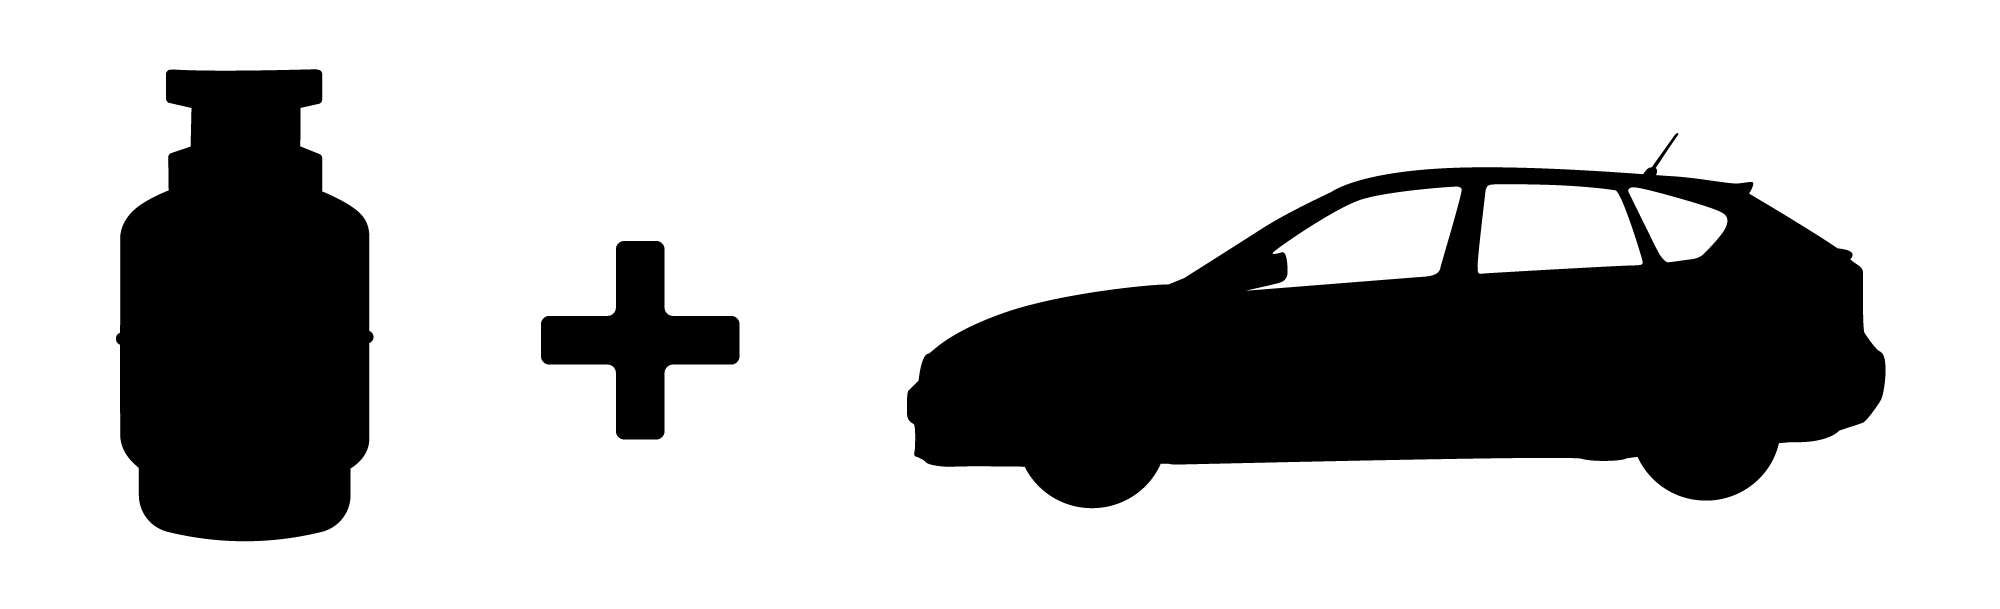 超稀少size0幻1stコレクション伝説的アイテム モンクレール ガムブルー 09AW カシミア テーラード パイピング ダウン ジャケット 国内正規